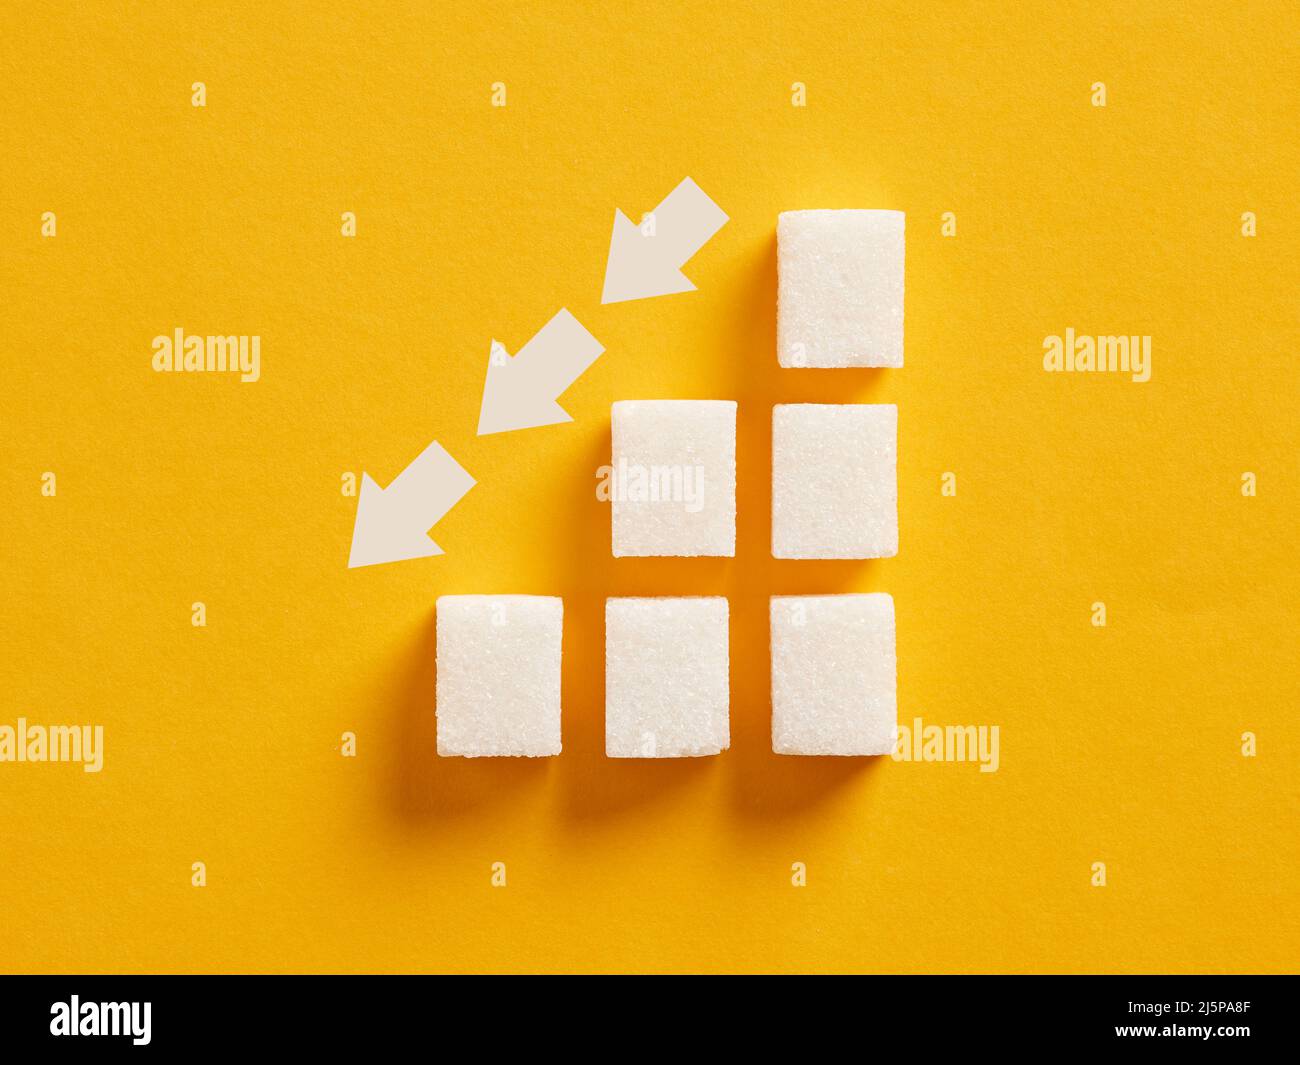 Grafico ascendente a cubetti di zucchero con frecce discendenti che indicano per ridurre l'assunzione di zucchero e la nutrizione sana. Foto Stock